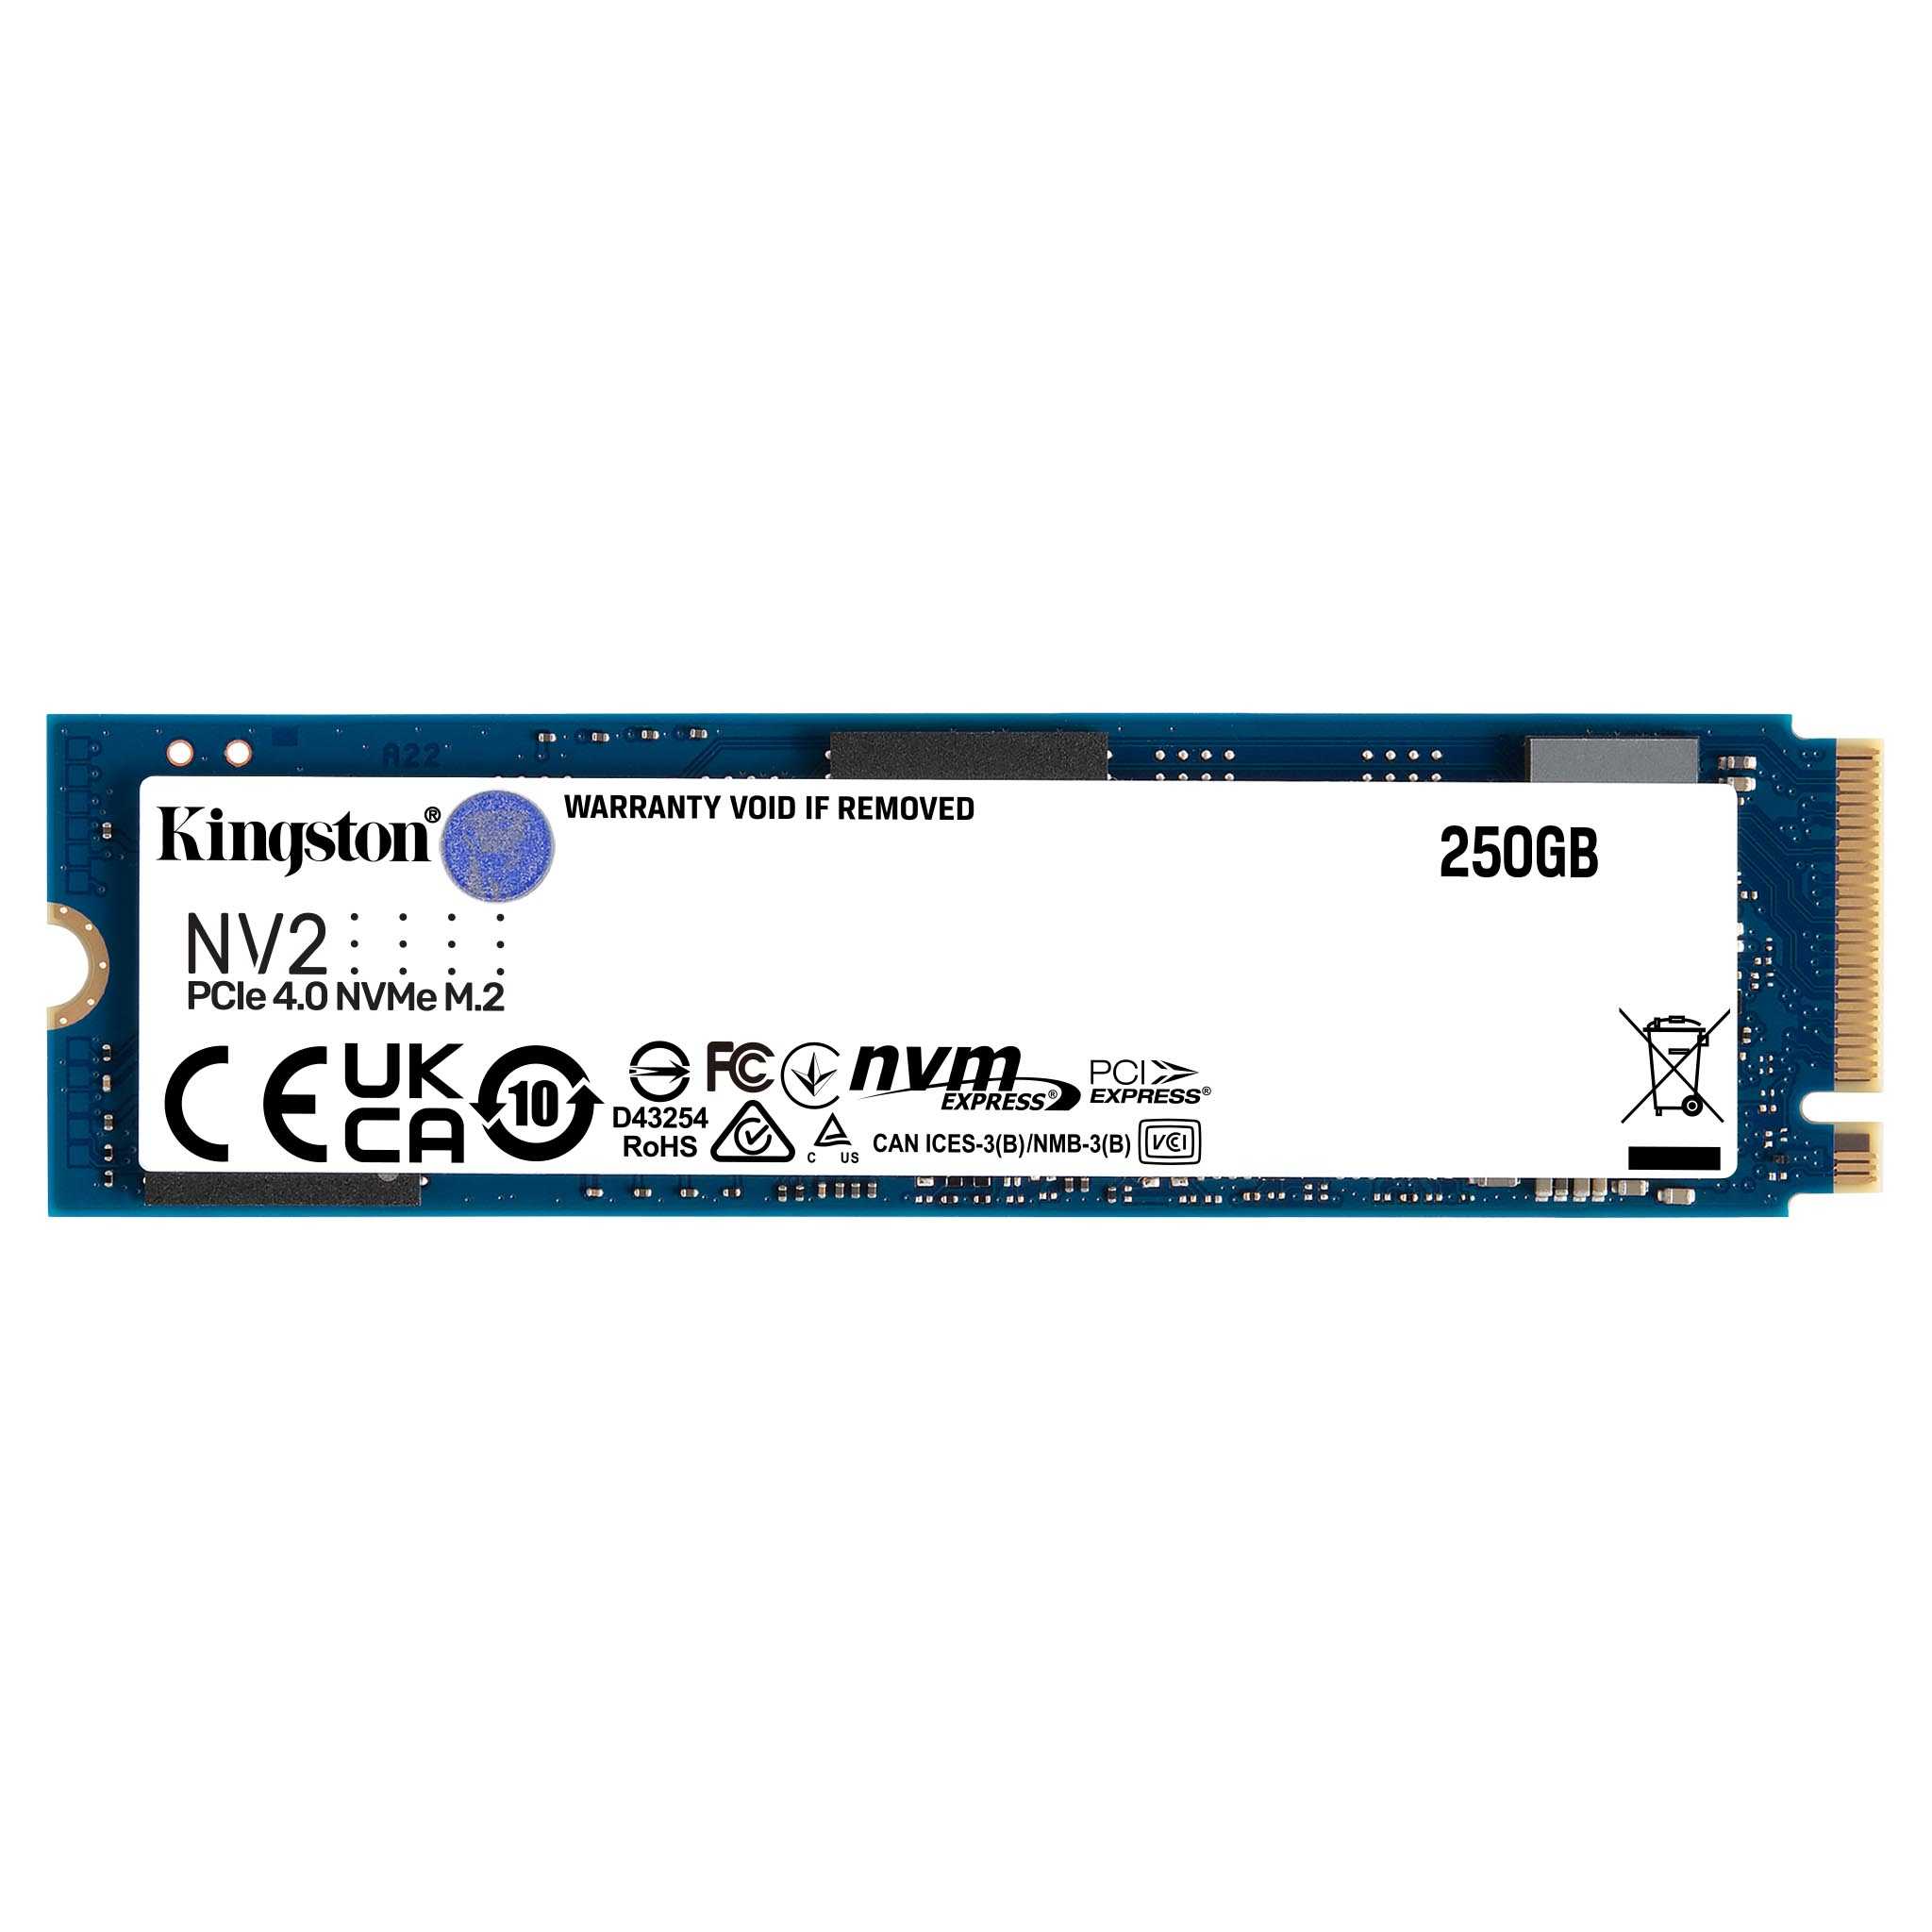 読込速度3500MBsNV2 PCIe 4.0 NVMe SSD SNV2S/4000G